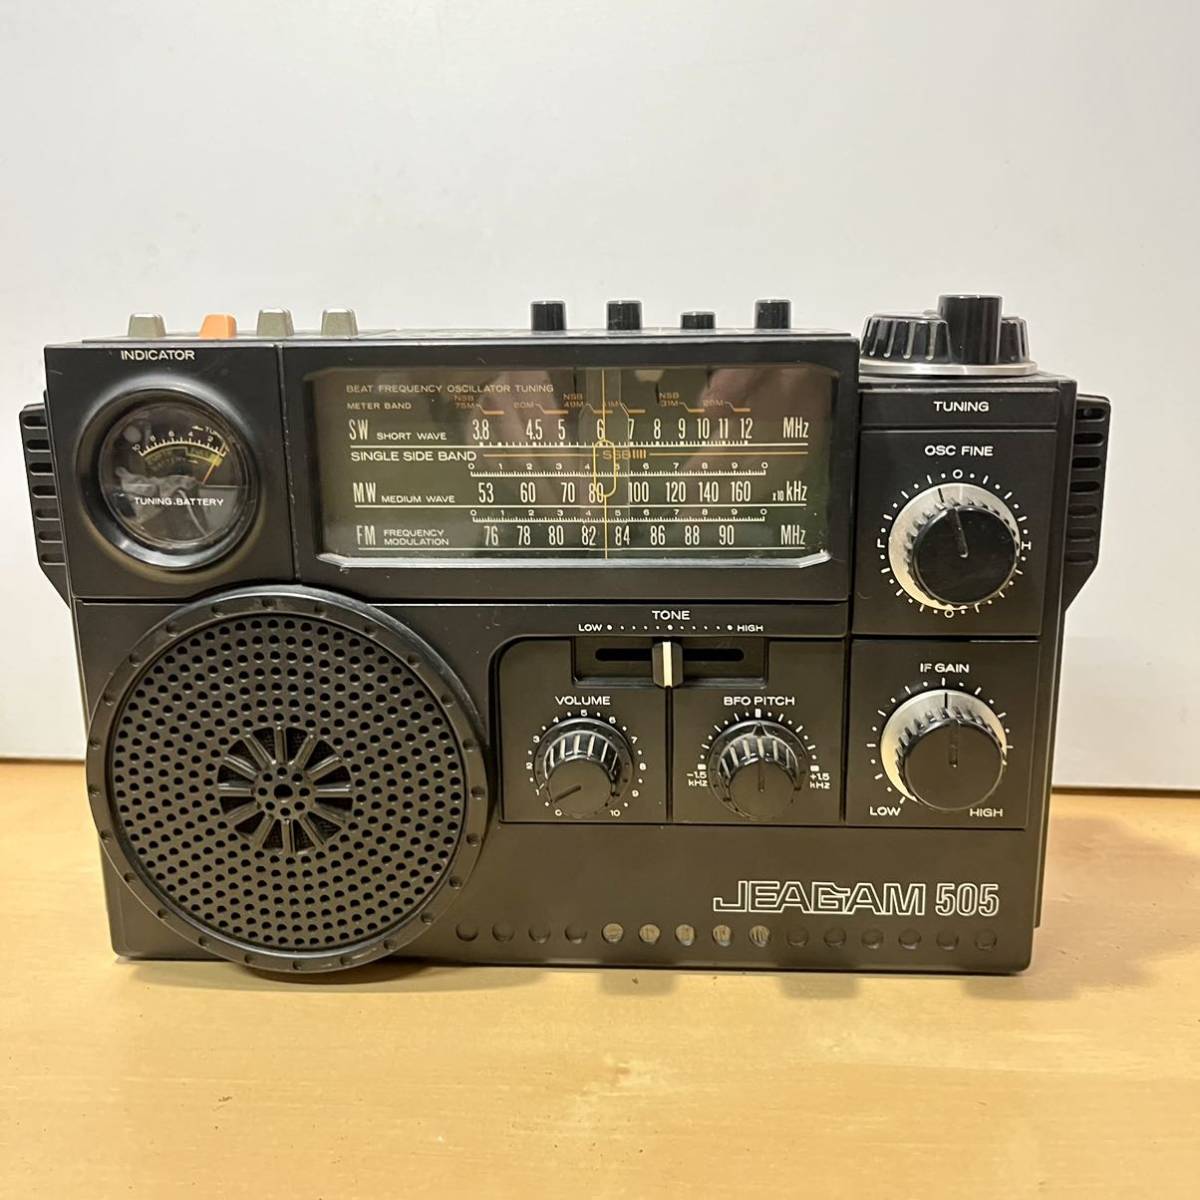 ヤフオク! - 三菱 BCLラジオ MITSUBISHI JEAGAM 505 JP-505 